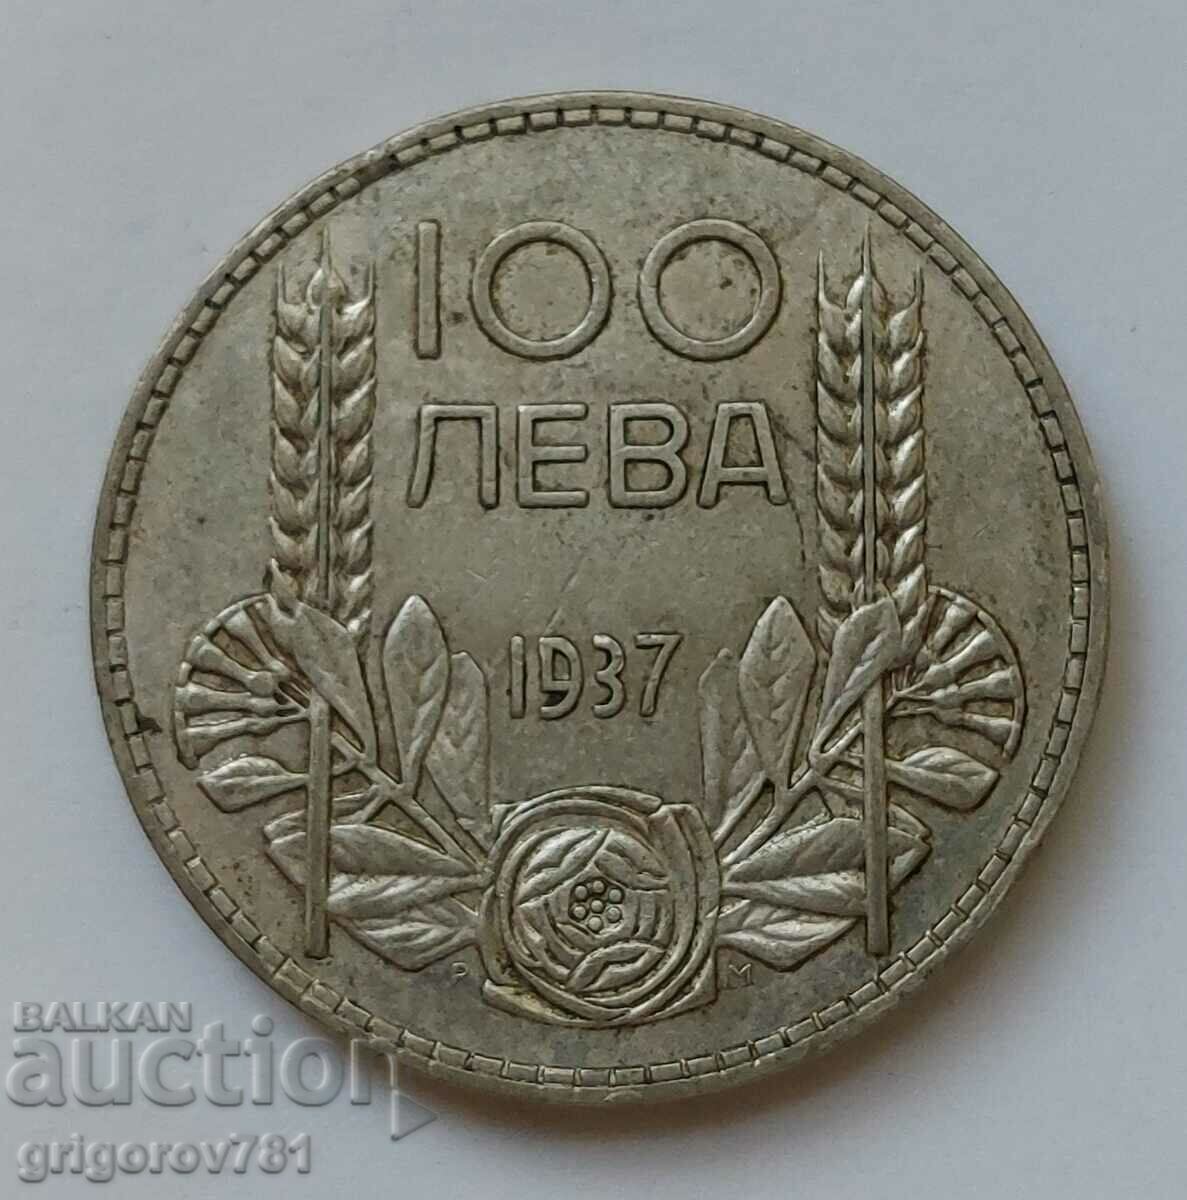 Ασήμι 100 λέβα Βουλγαρία 1937 - ασημένιο νόμισμα #114